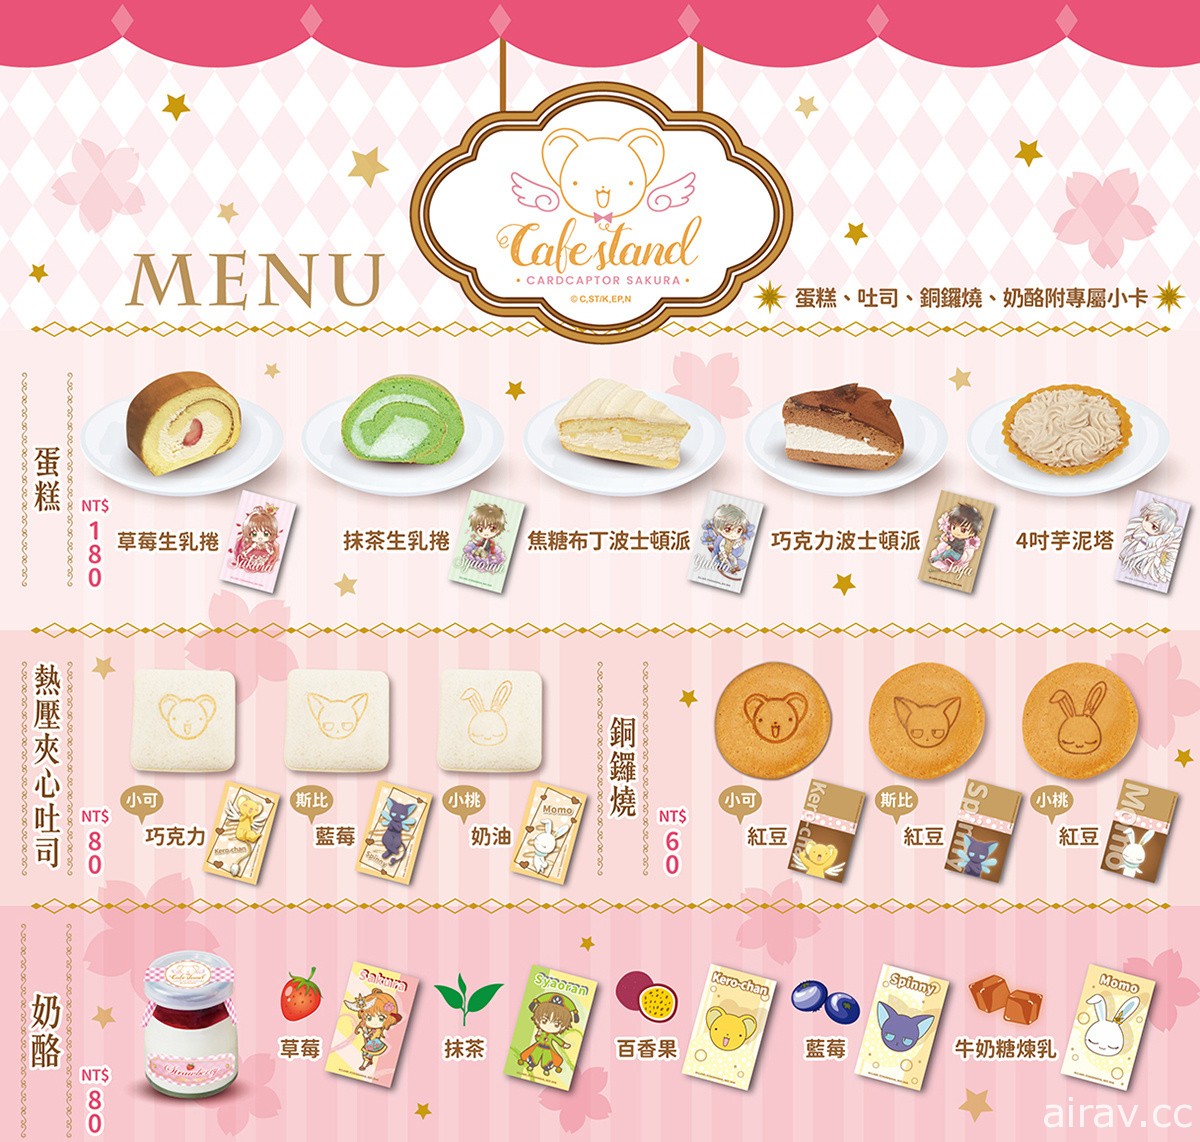 「庫洛魔法使透明牌篇 Café stand」4 月底將於新光三越南西店登場